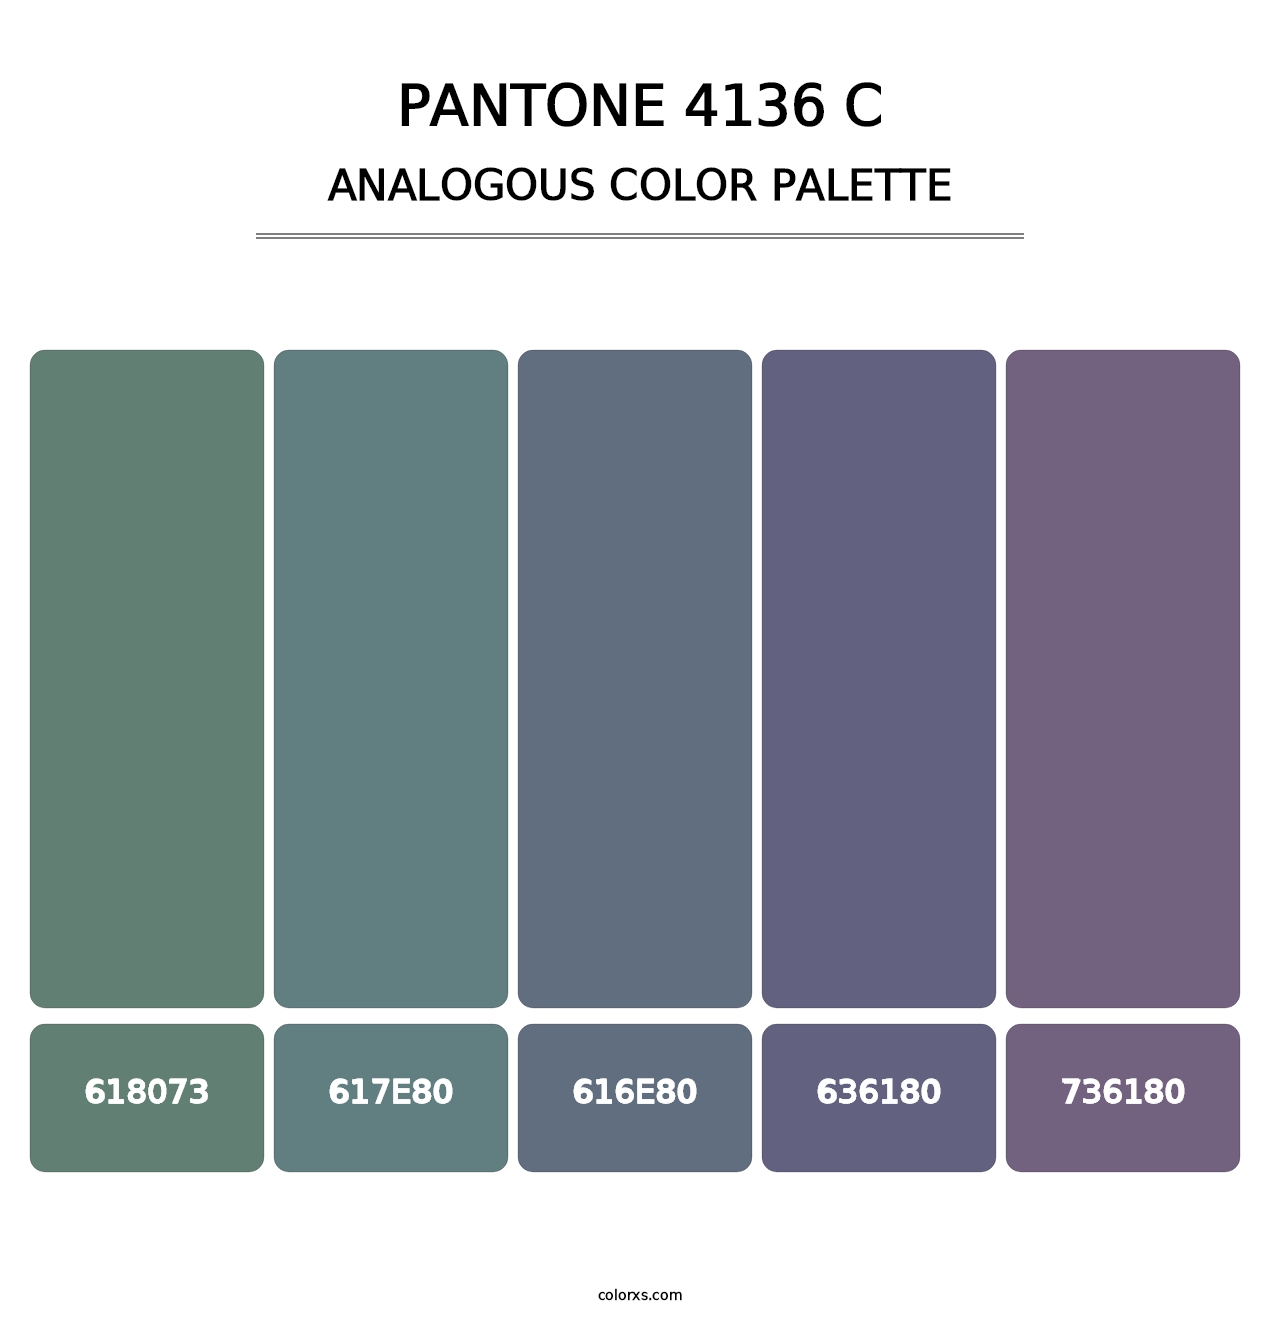 PANTONE 4136 C - Analogous Color Palette